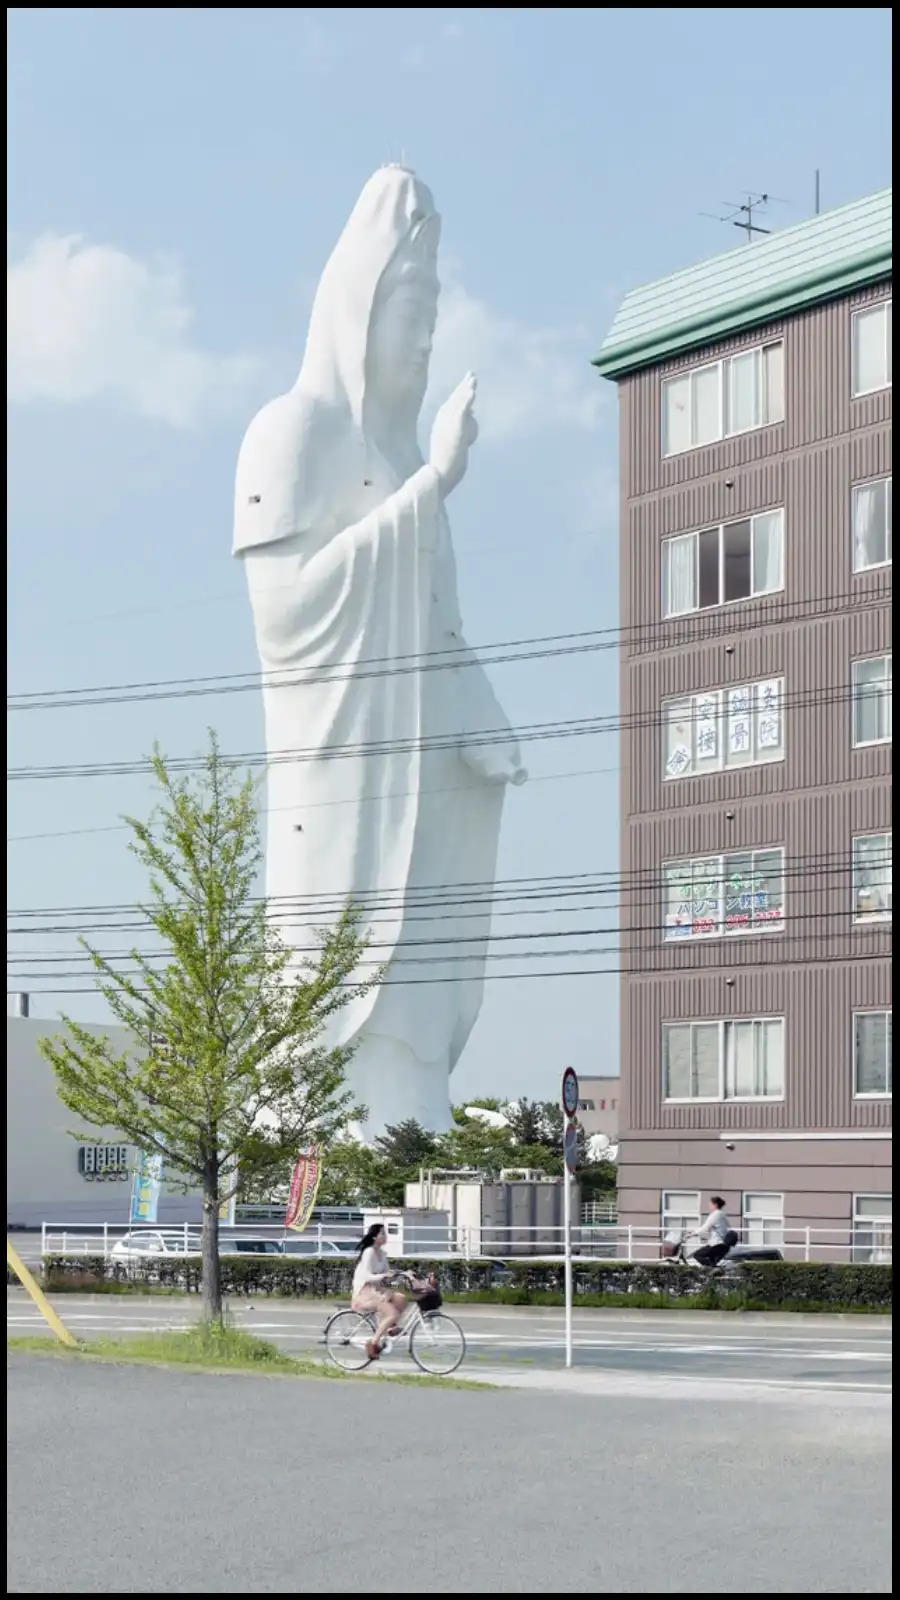 huge statue